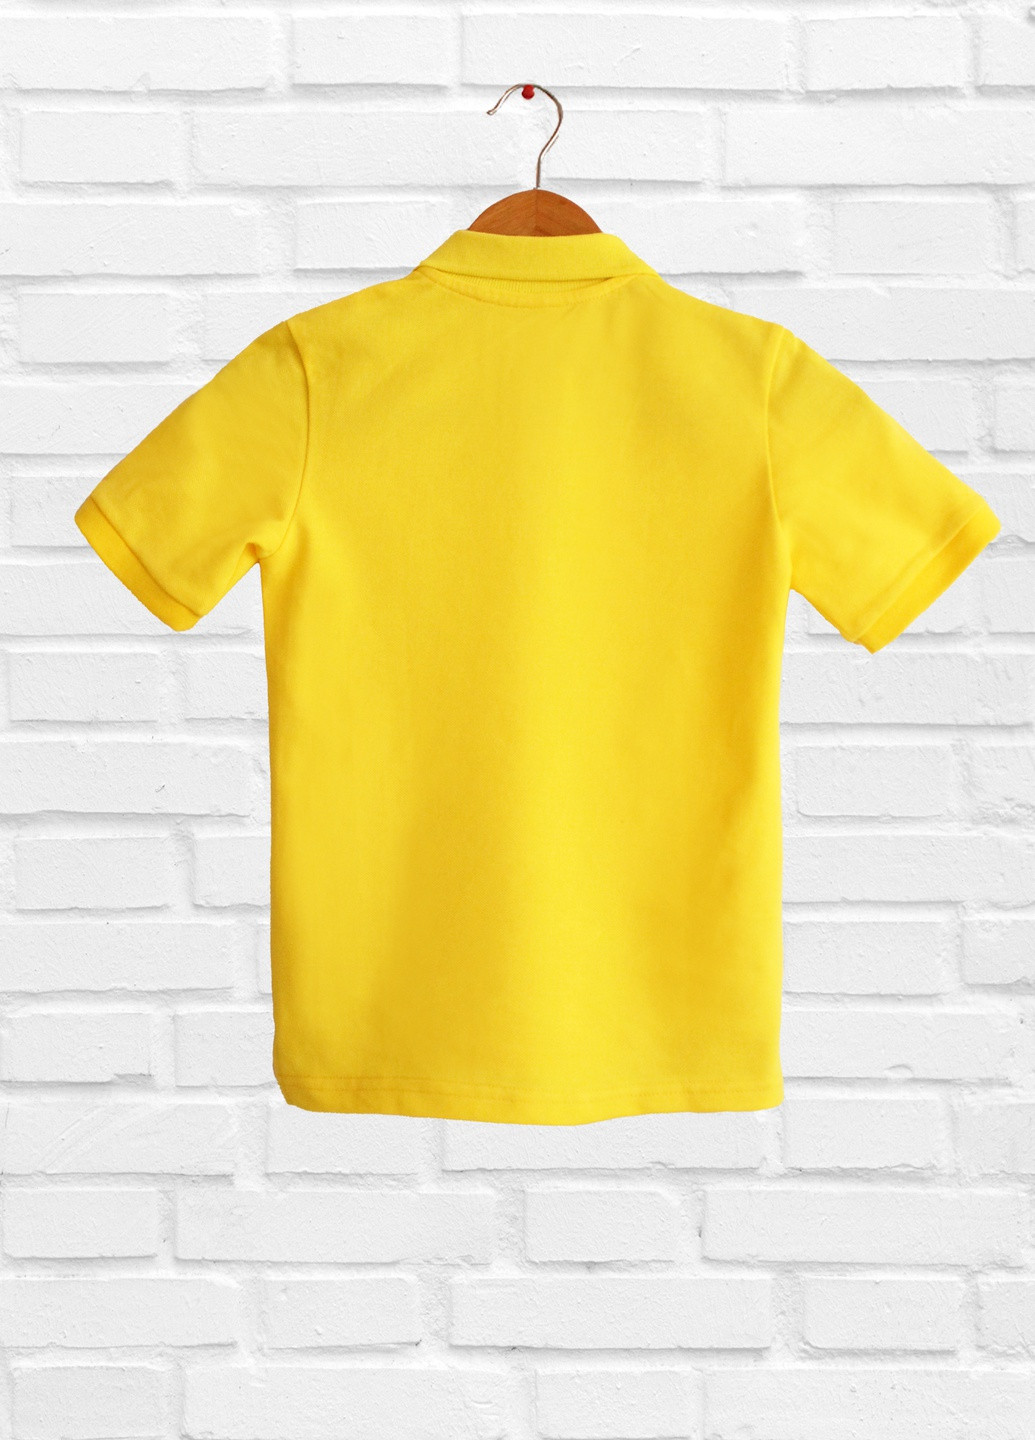 Светло-желтая летняя футболка детская, светло-жёлтая, хлопковая дм471/1-43 Malta